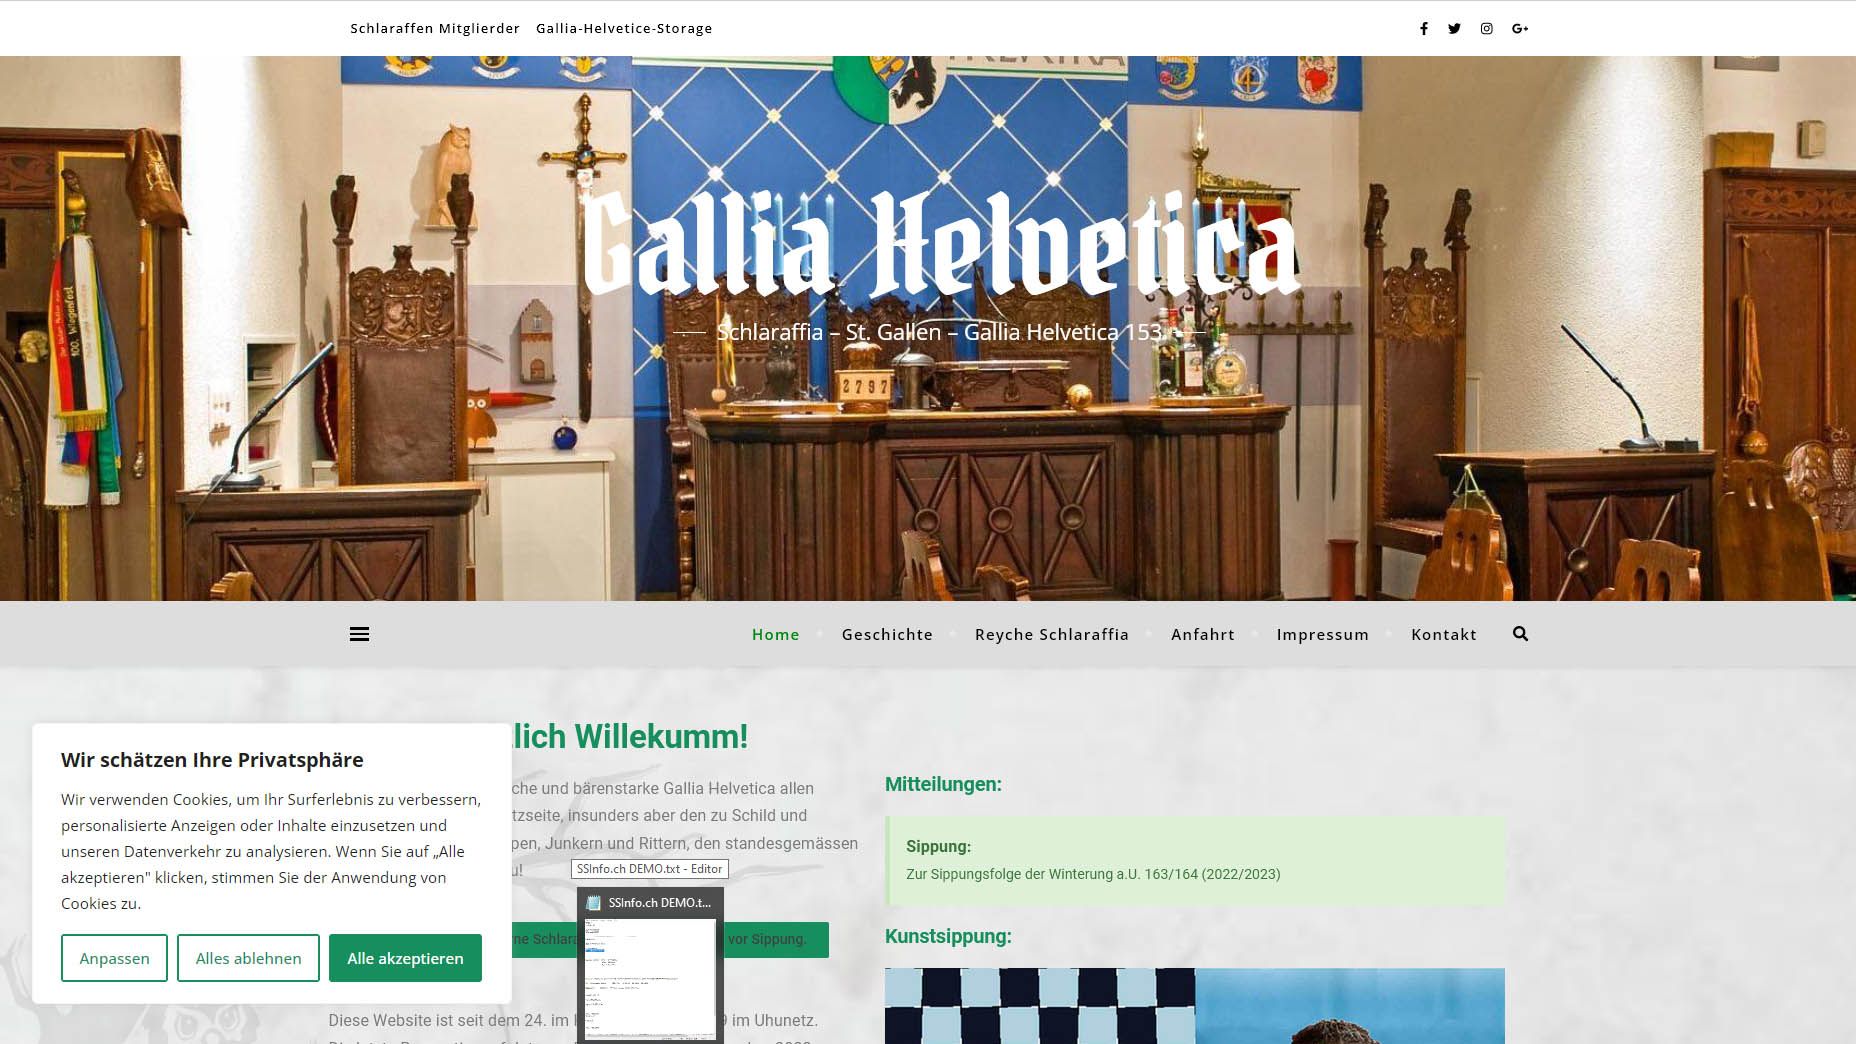 Gallia Helvetica S&S Informatik GmbH